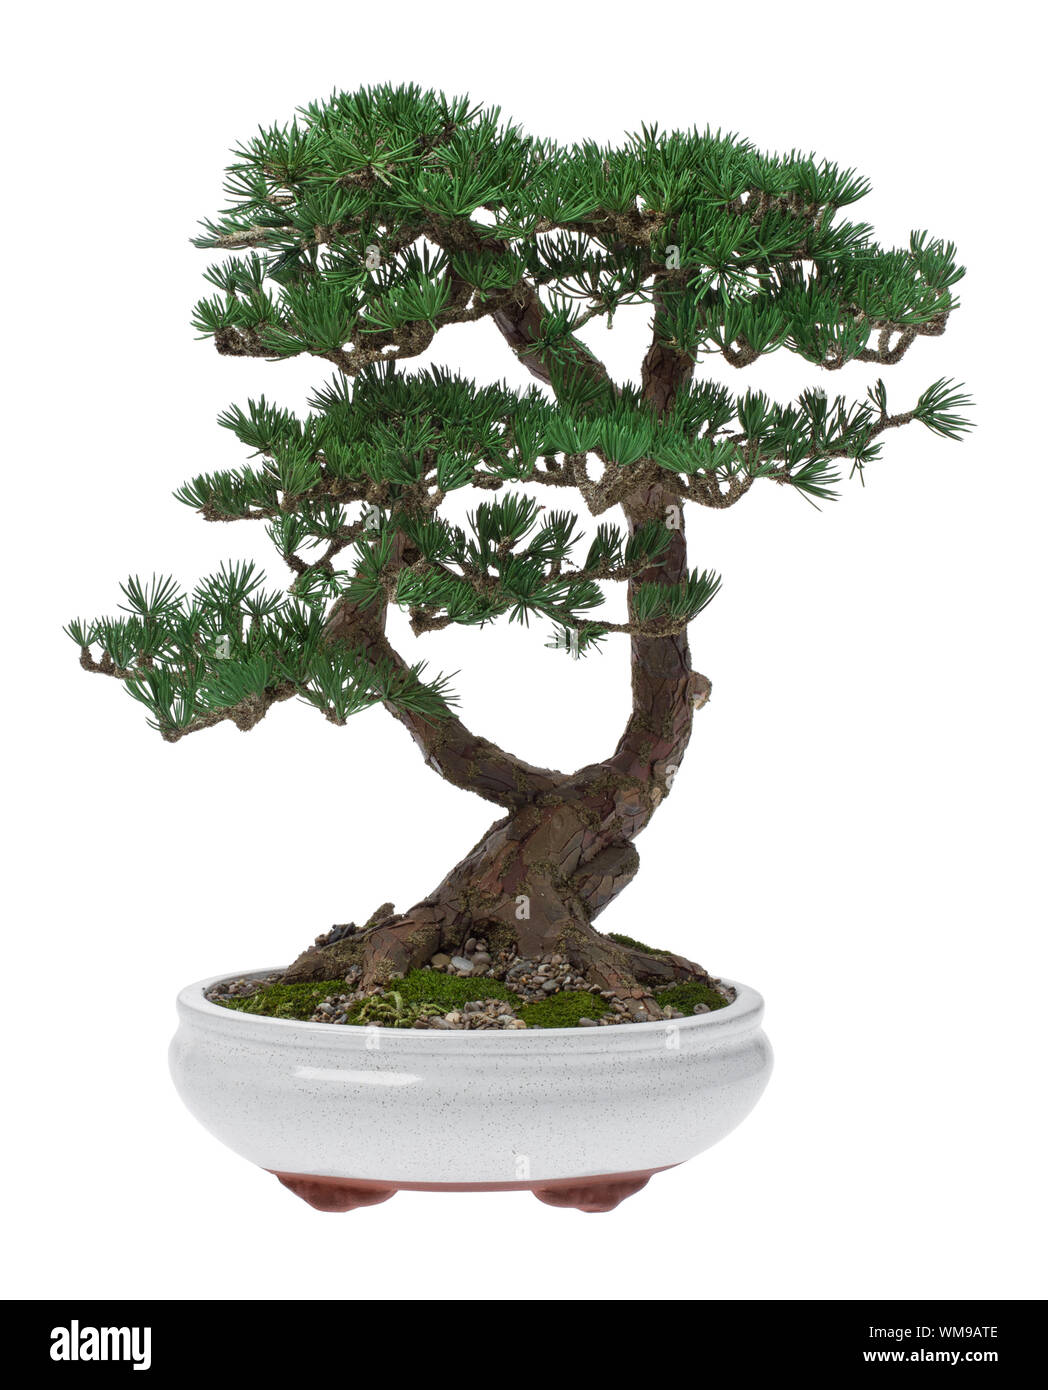 Un pequeño bonsai en una vasija de cerámica. Aislado sobre un fondo blanco. Foto de stock